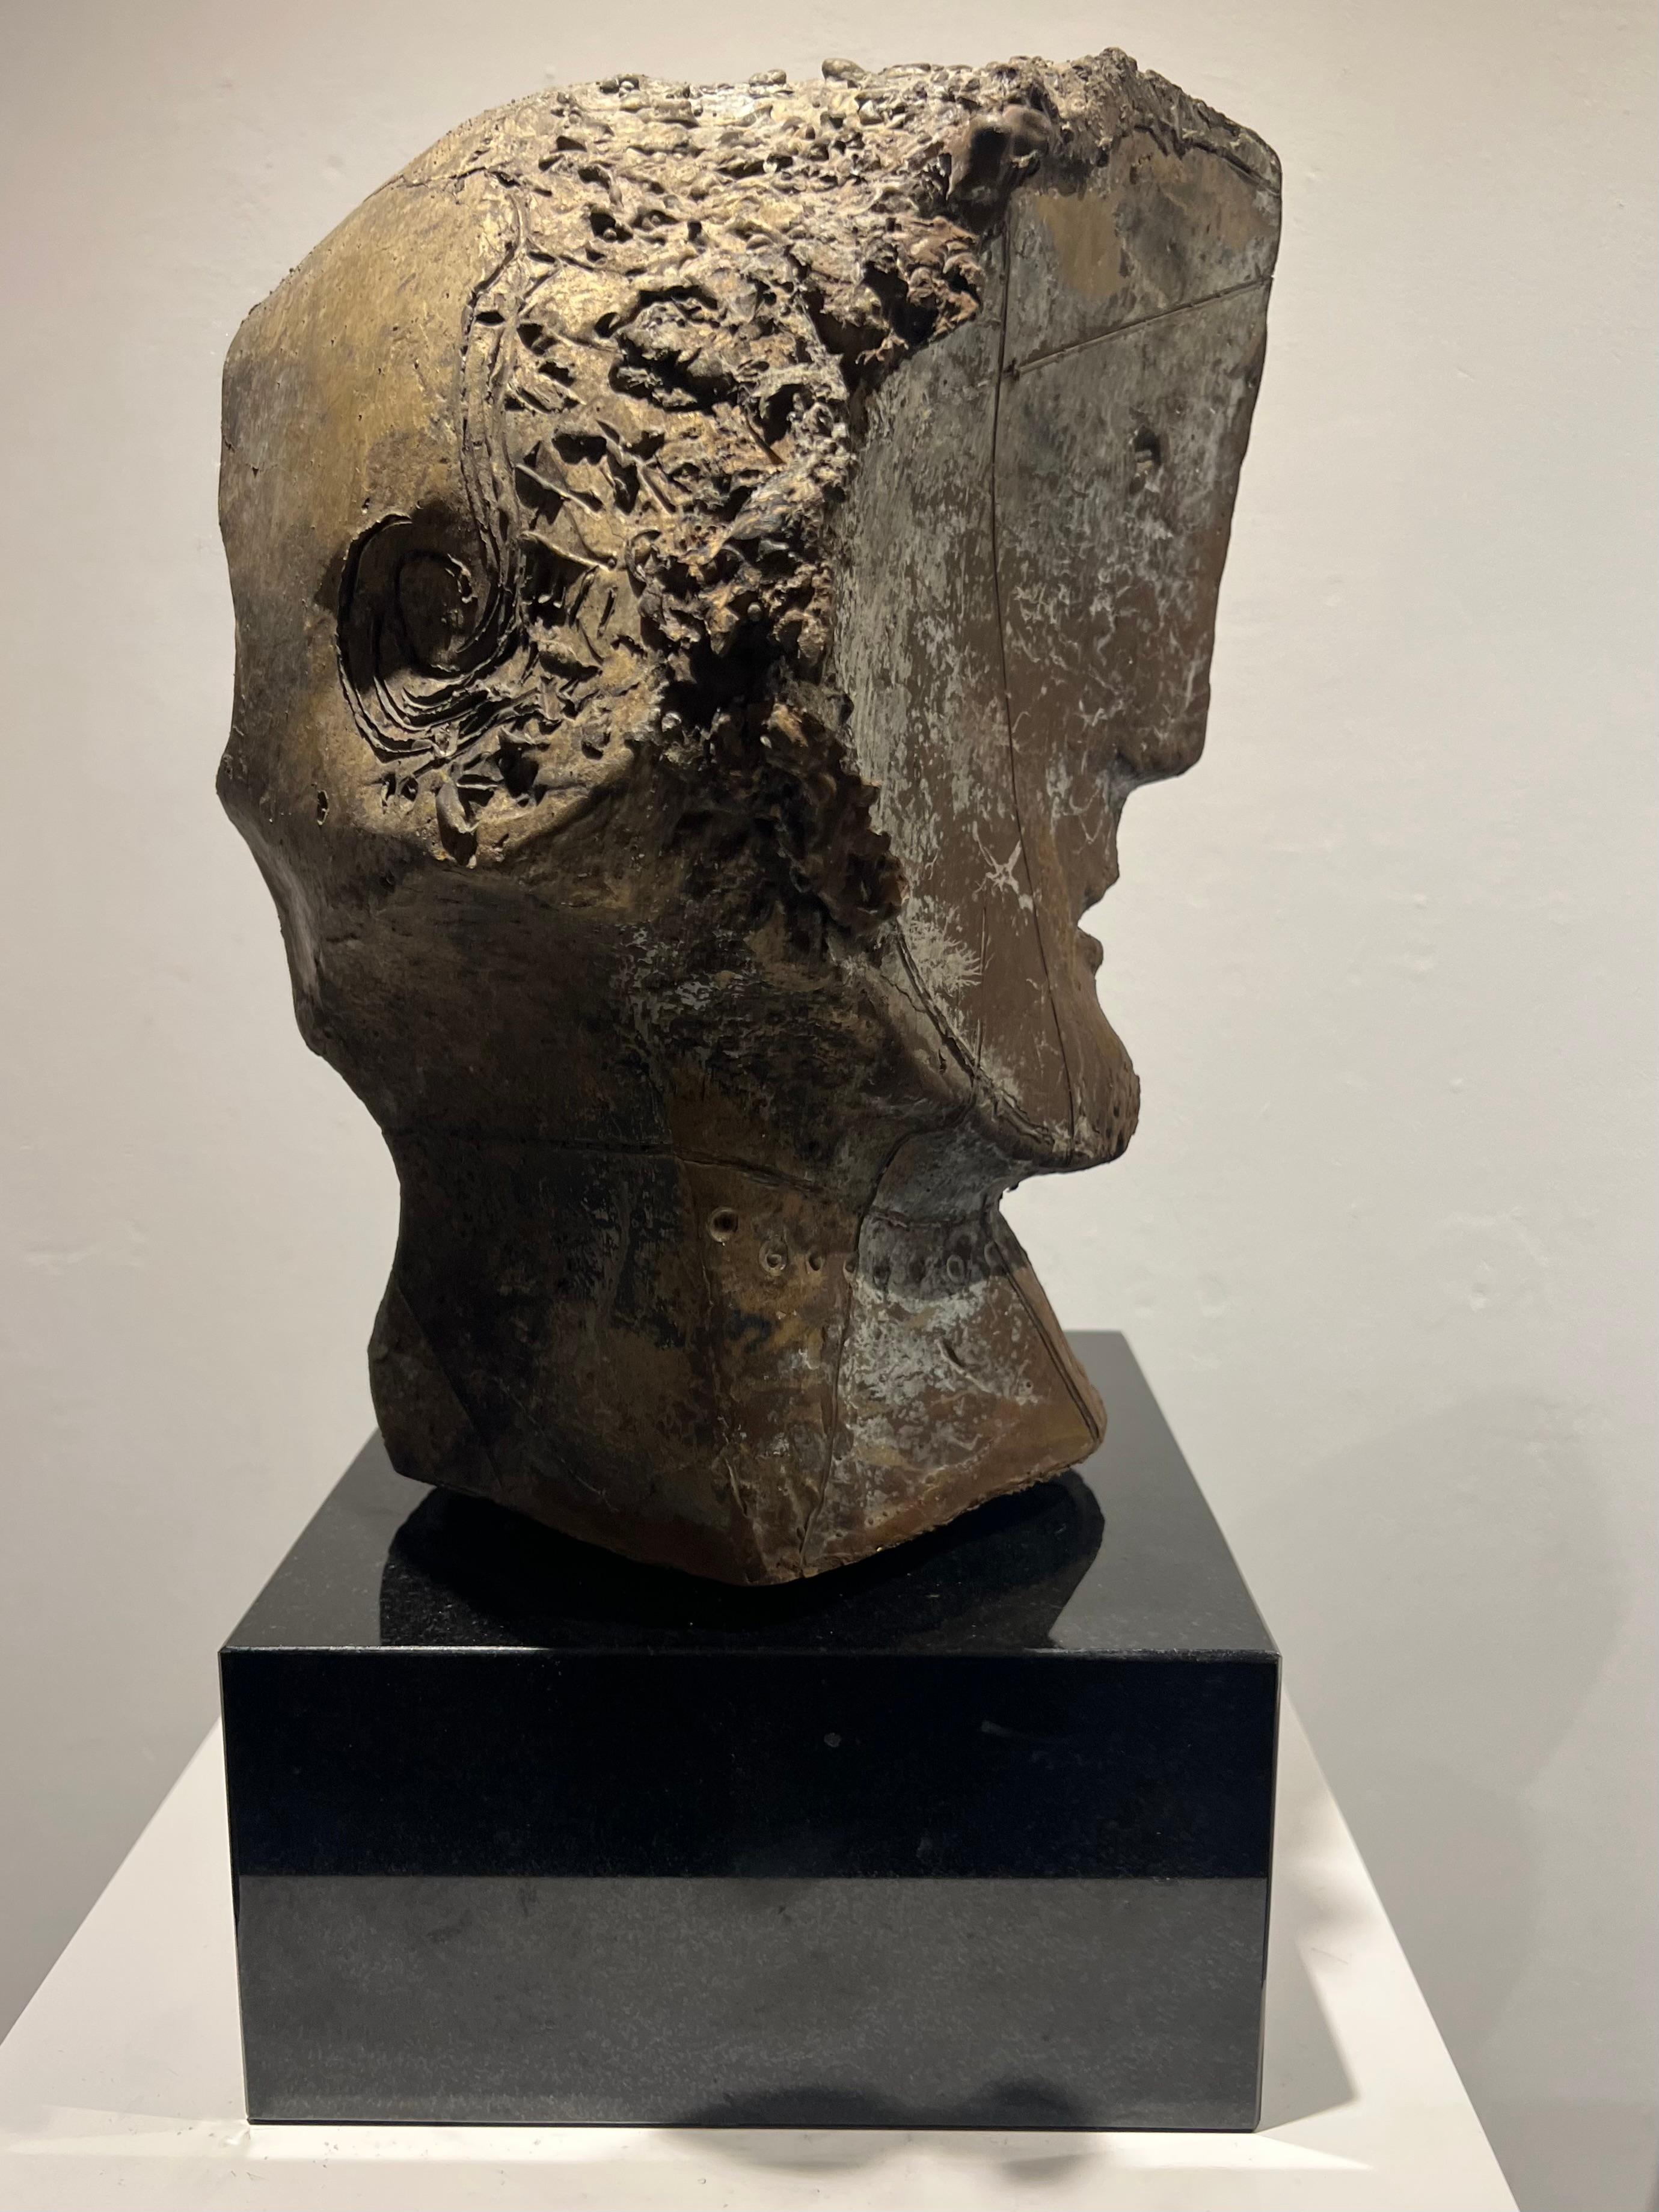 Inner Circle (Casting Scale) Bronze Sculpture Figurative Abstract Head En stock

Junghans (1956, Recklinghausen) crée des sculptures abstraites en pierre, en bois et en bronze, principalement des torses et des portraits primitifs, dans une imagerie